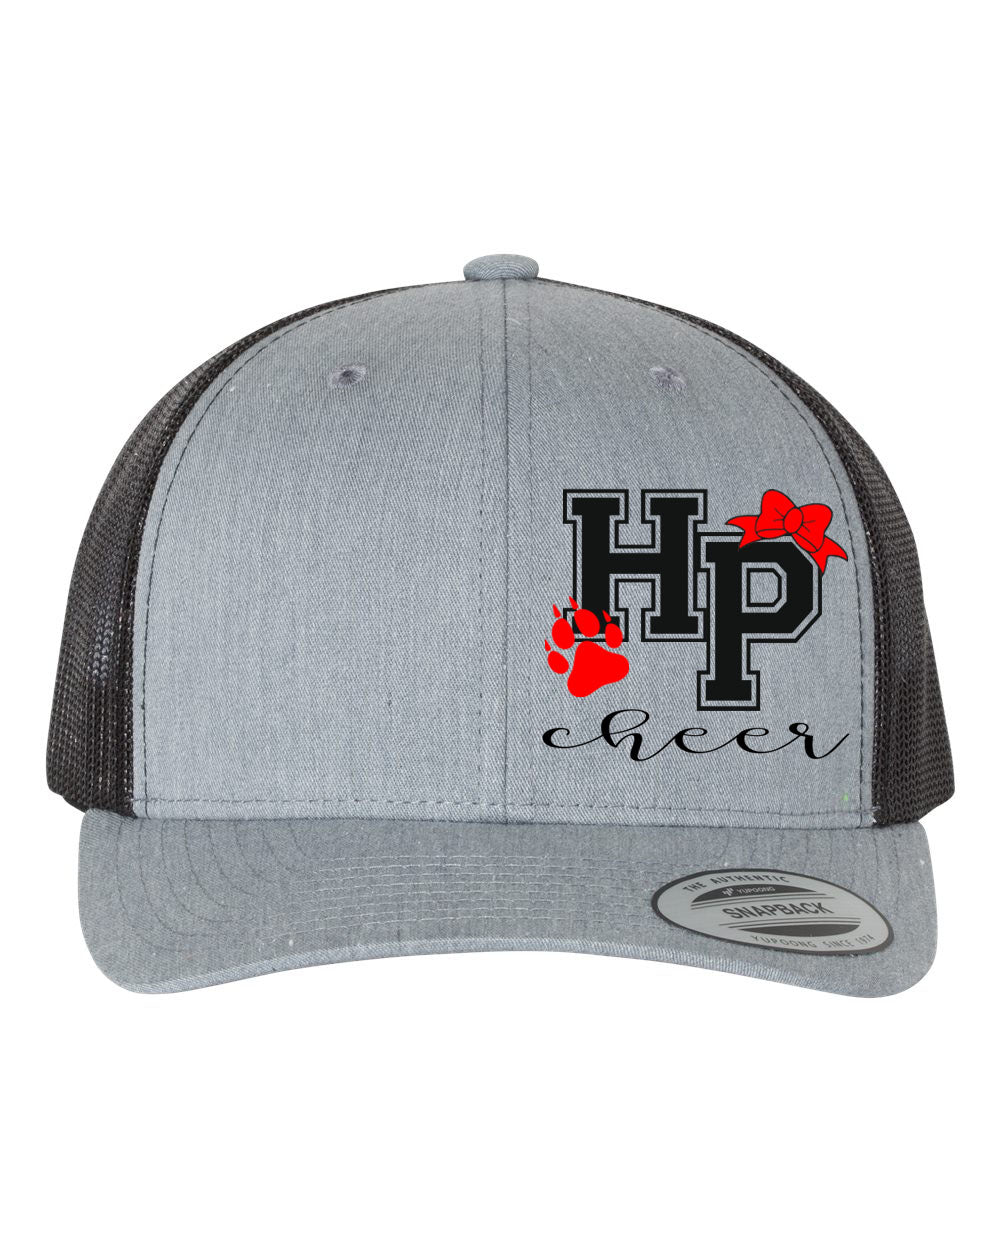 High Point Cheer Design 3 Trucker Hat